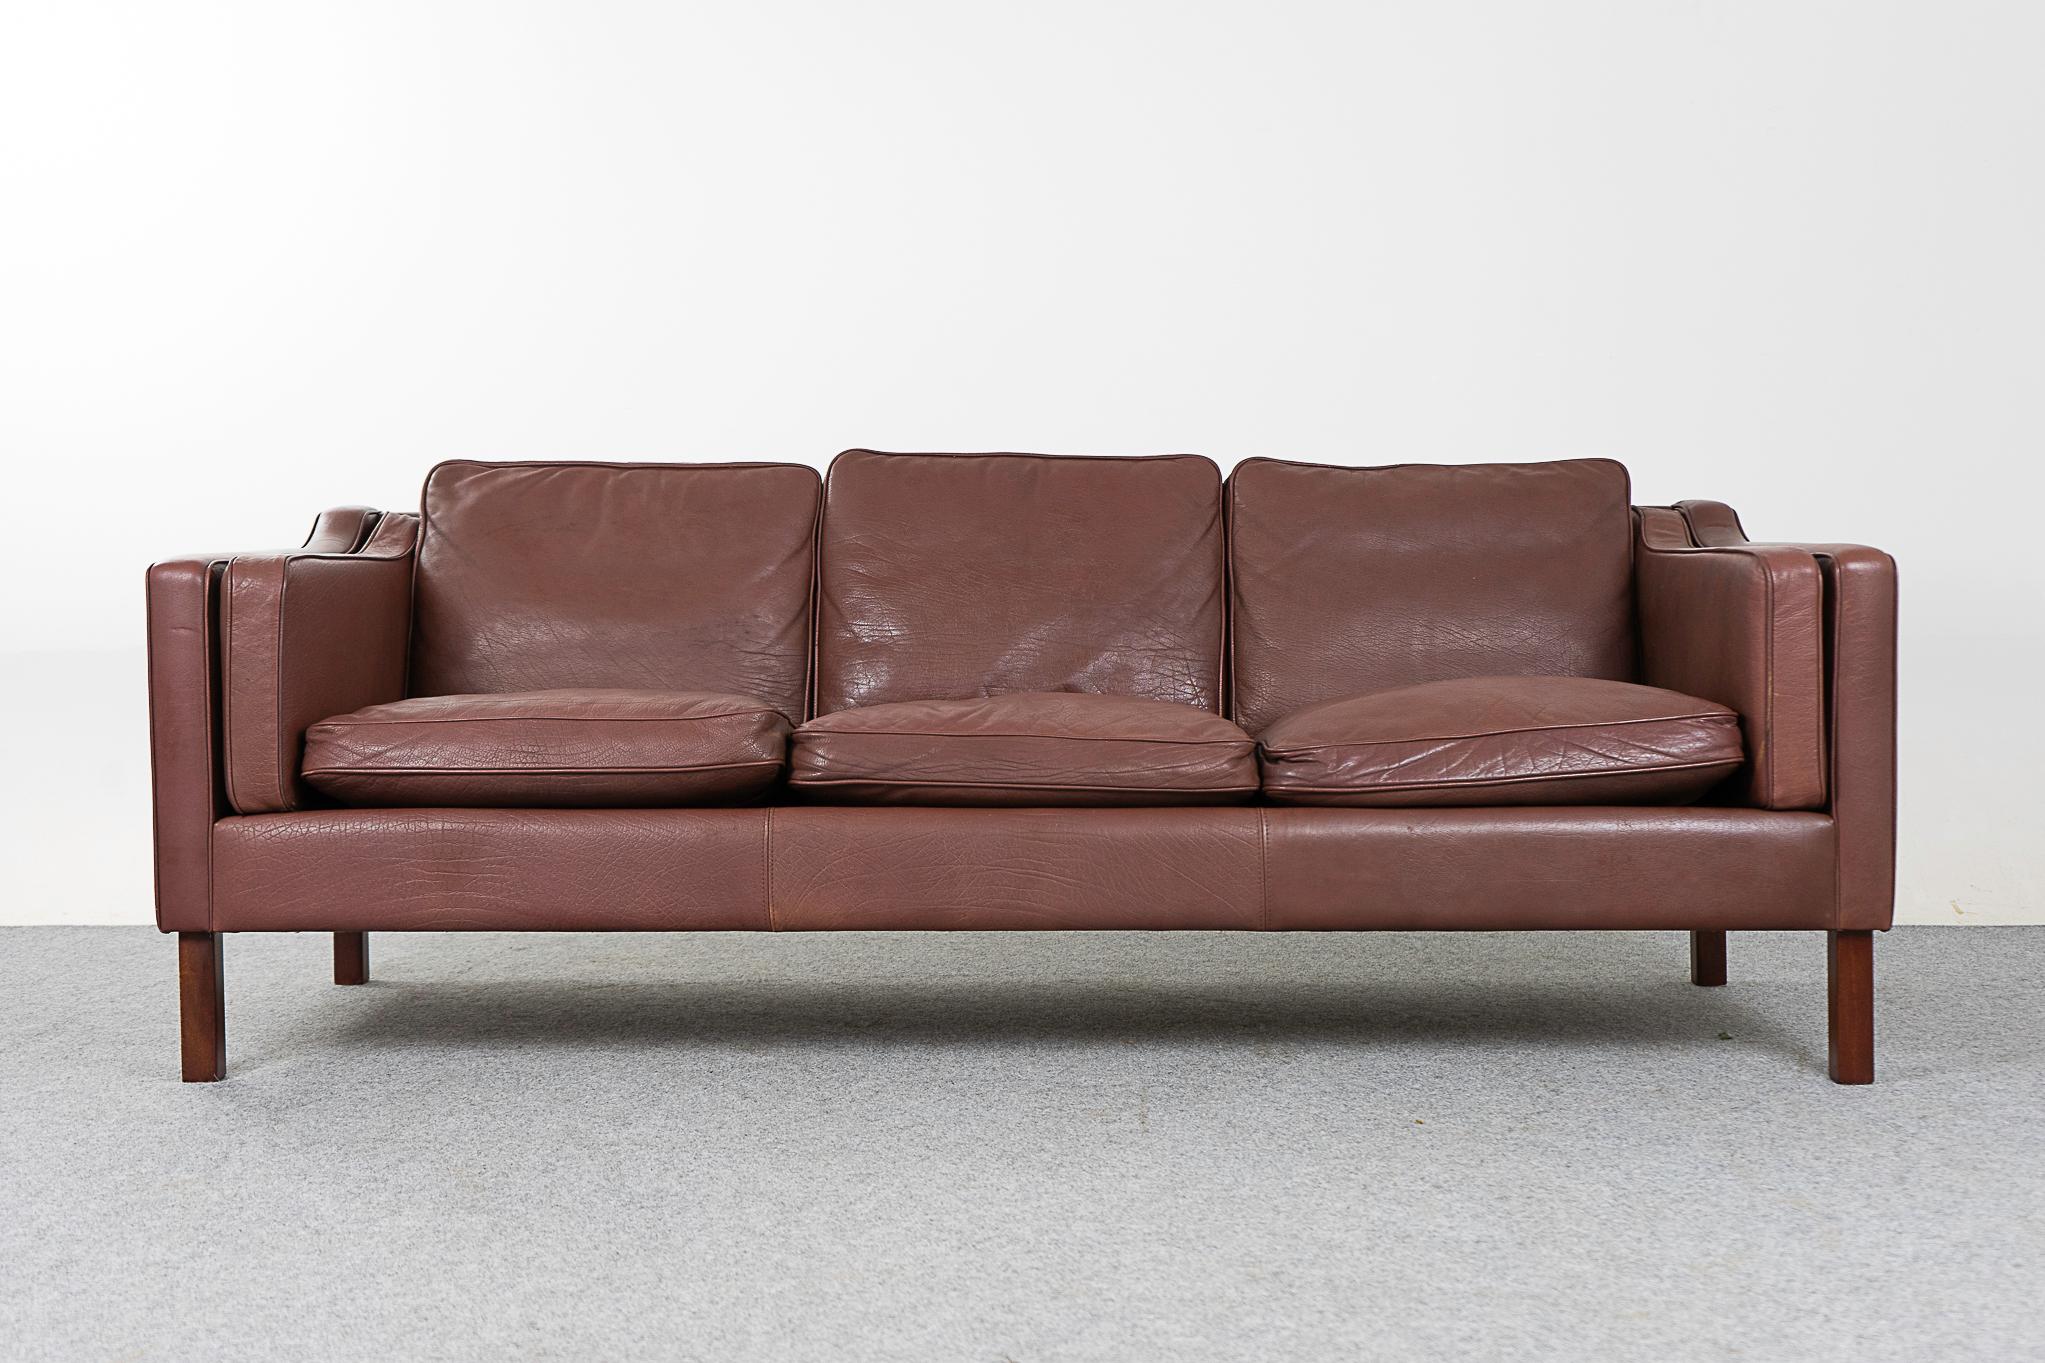 Canapé danois en cuir, circa 1960. Le cuir marron original est doux et souple tout en étant durable pour garantir des années d'utilisation et de plaisir. Un design moderne et épuré qui s'adapte à tous les décors.

Veuillez vous renseigner sur les